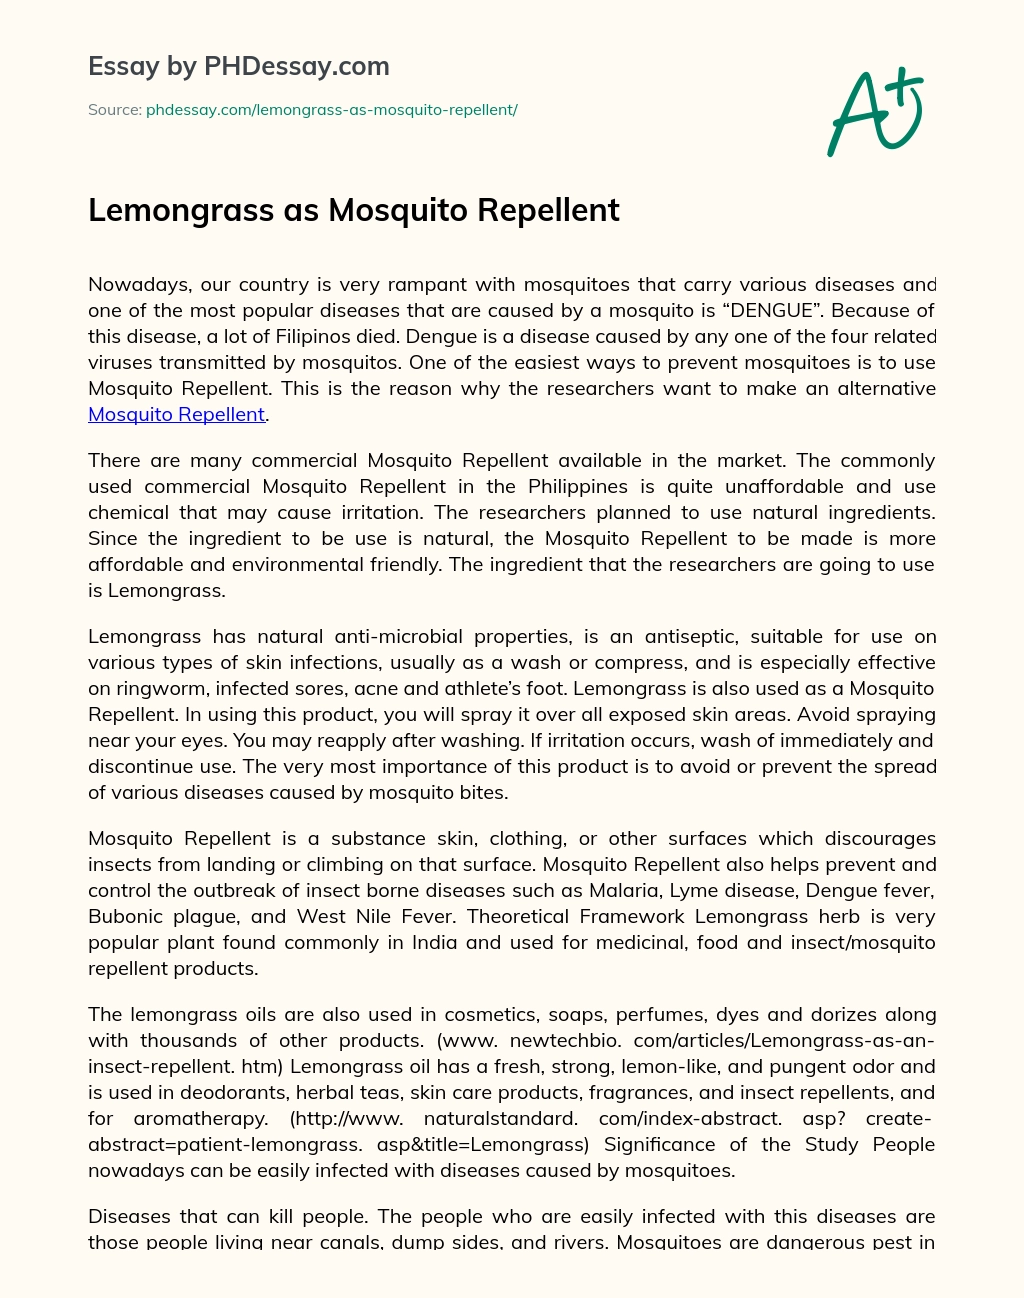 Lemongrass as Mosquito Repellent essay